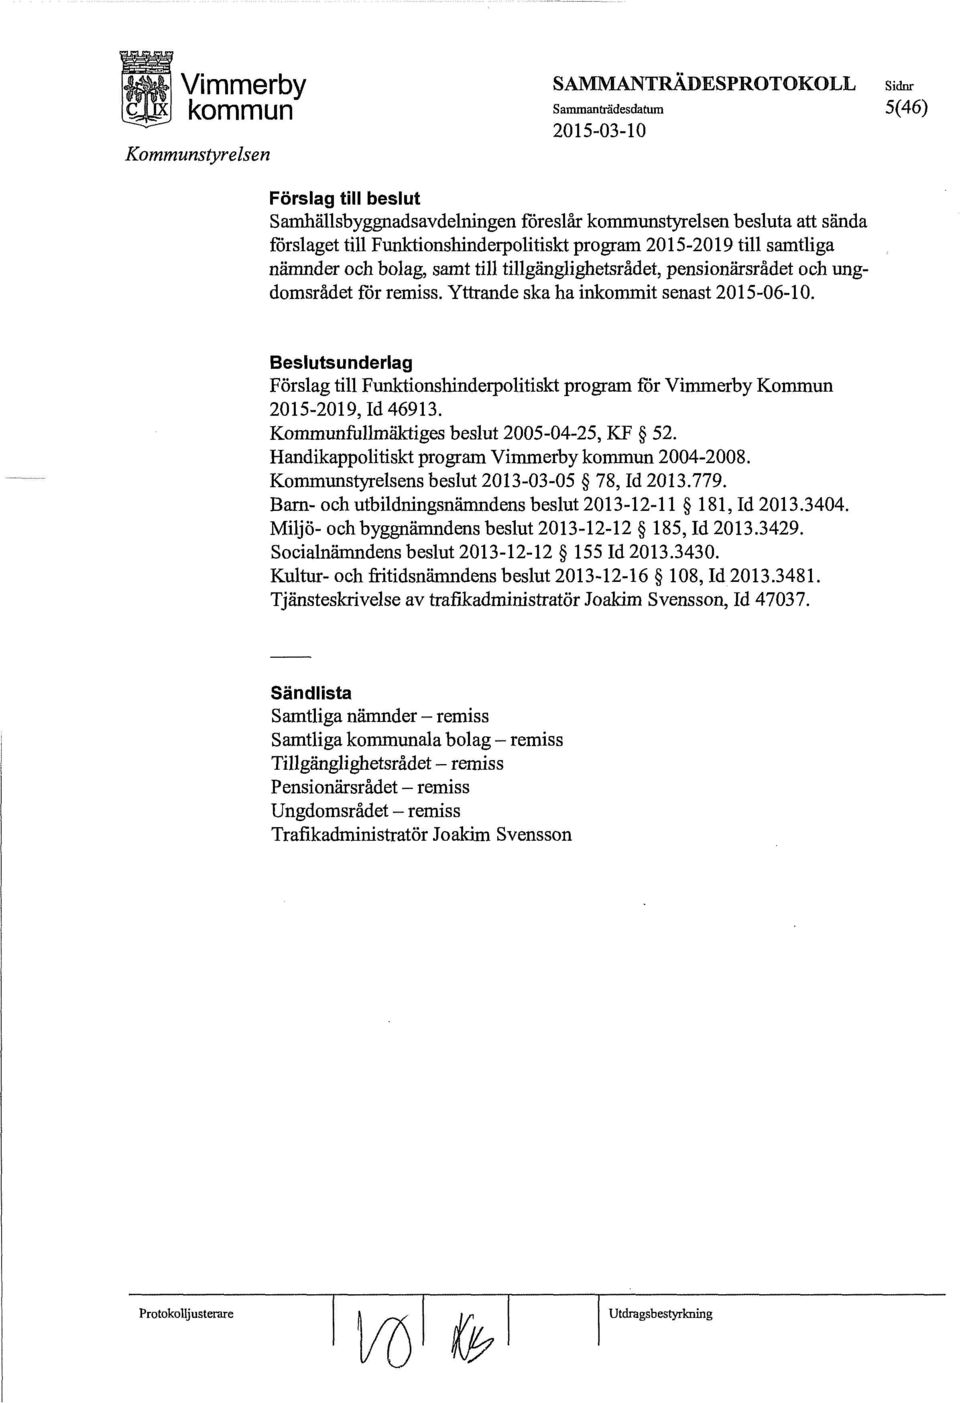 Beslutsunderlag Förslag till Funktionshinderpolitiskt program för Vimmerby Kommun 2015-2019, Id 46913. Kommunfullmäktiges beslut 2005-04-25, KF 52. Randikappolitiskt program Vimmerby 2004-2008.